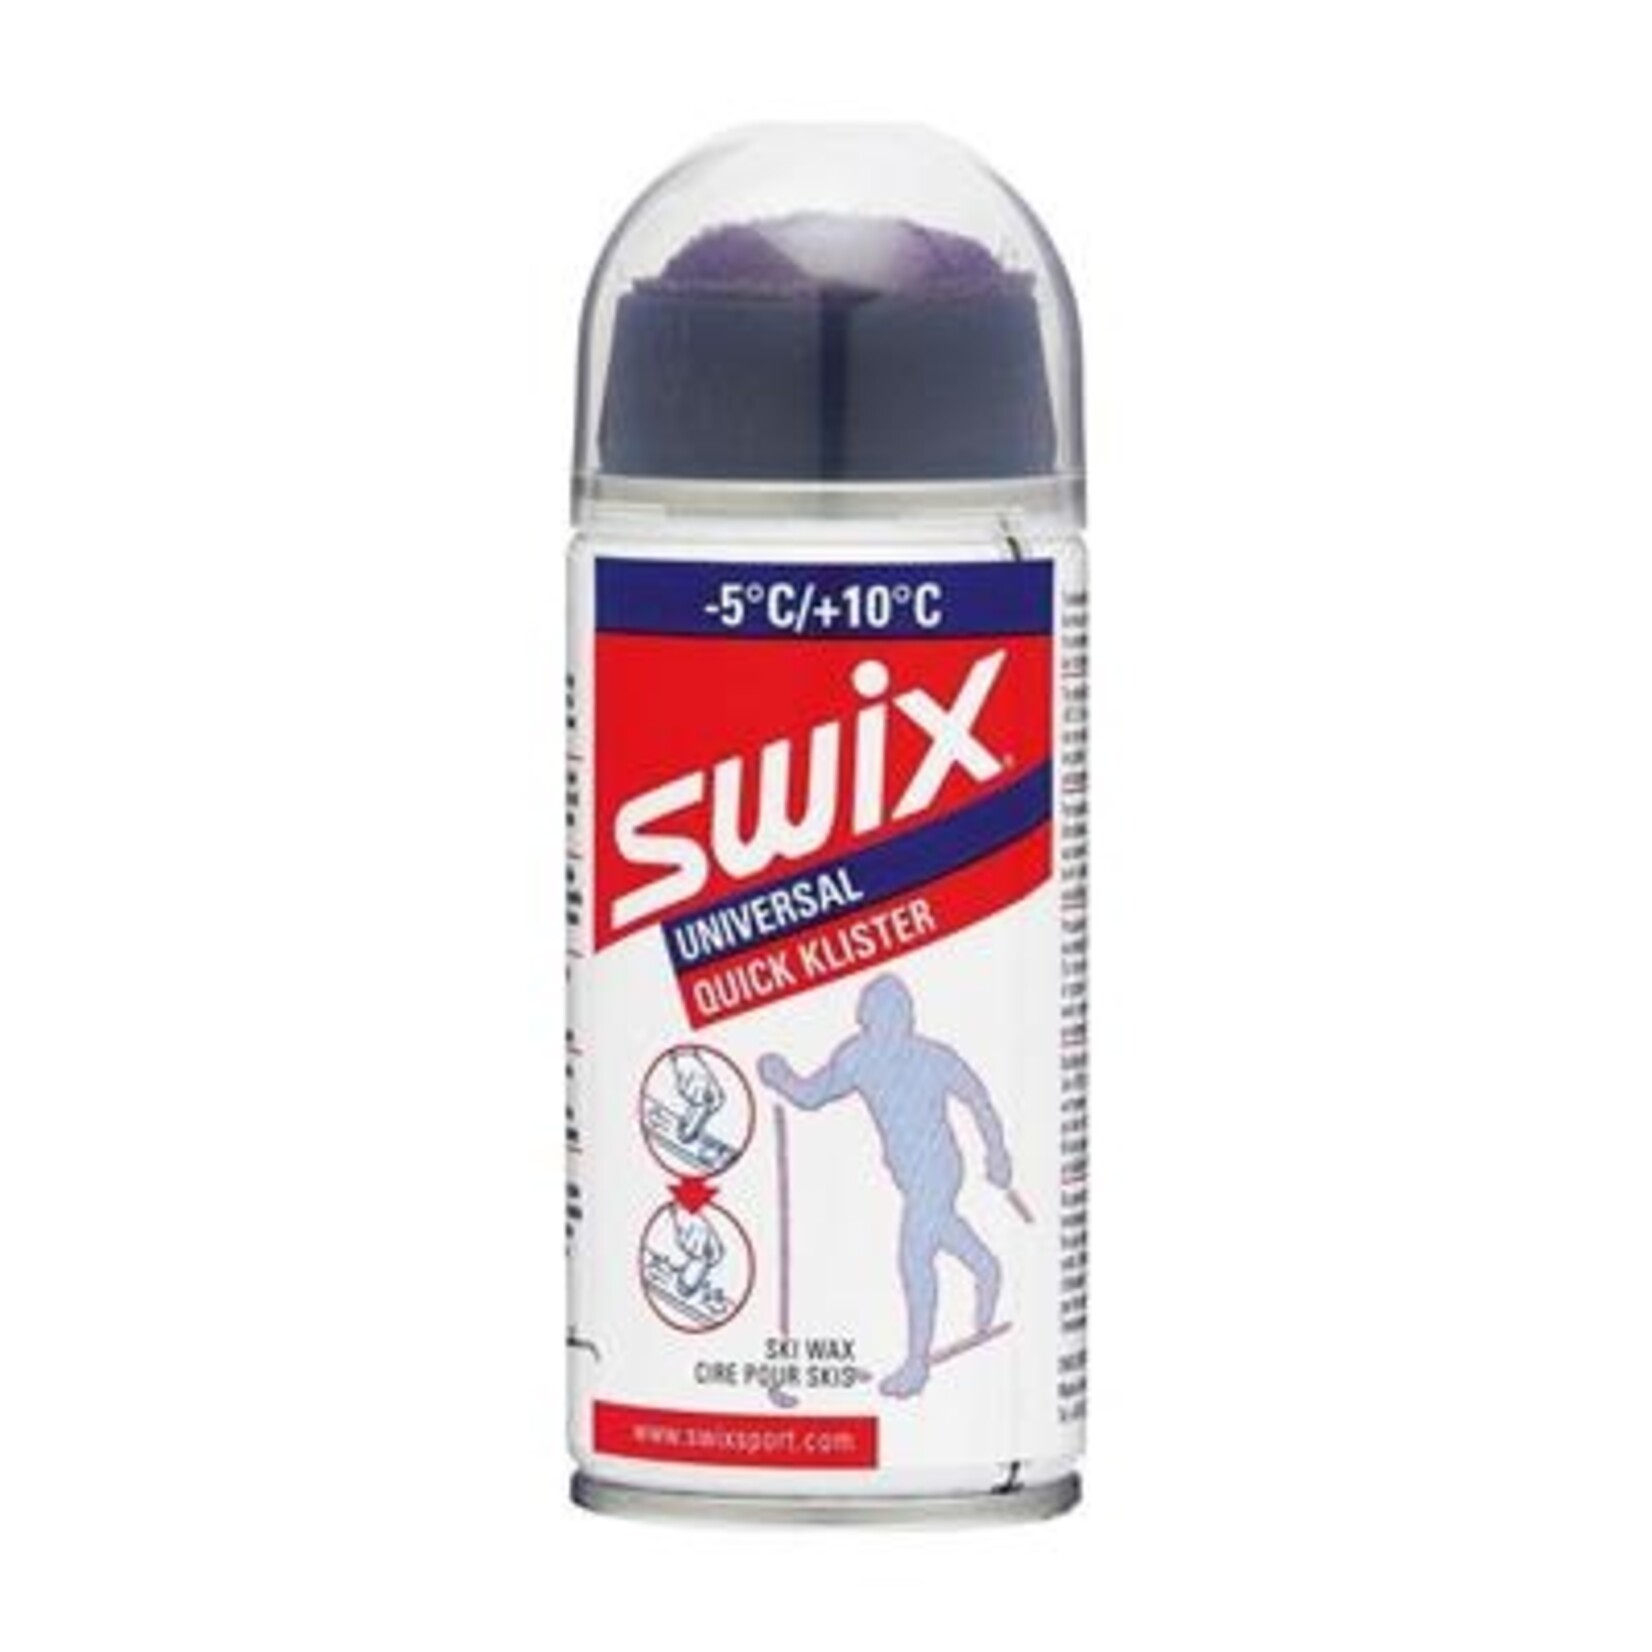 swix Swix Universal Liquid Quick Klister -5°C/+10°C